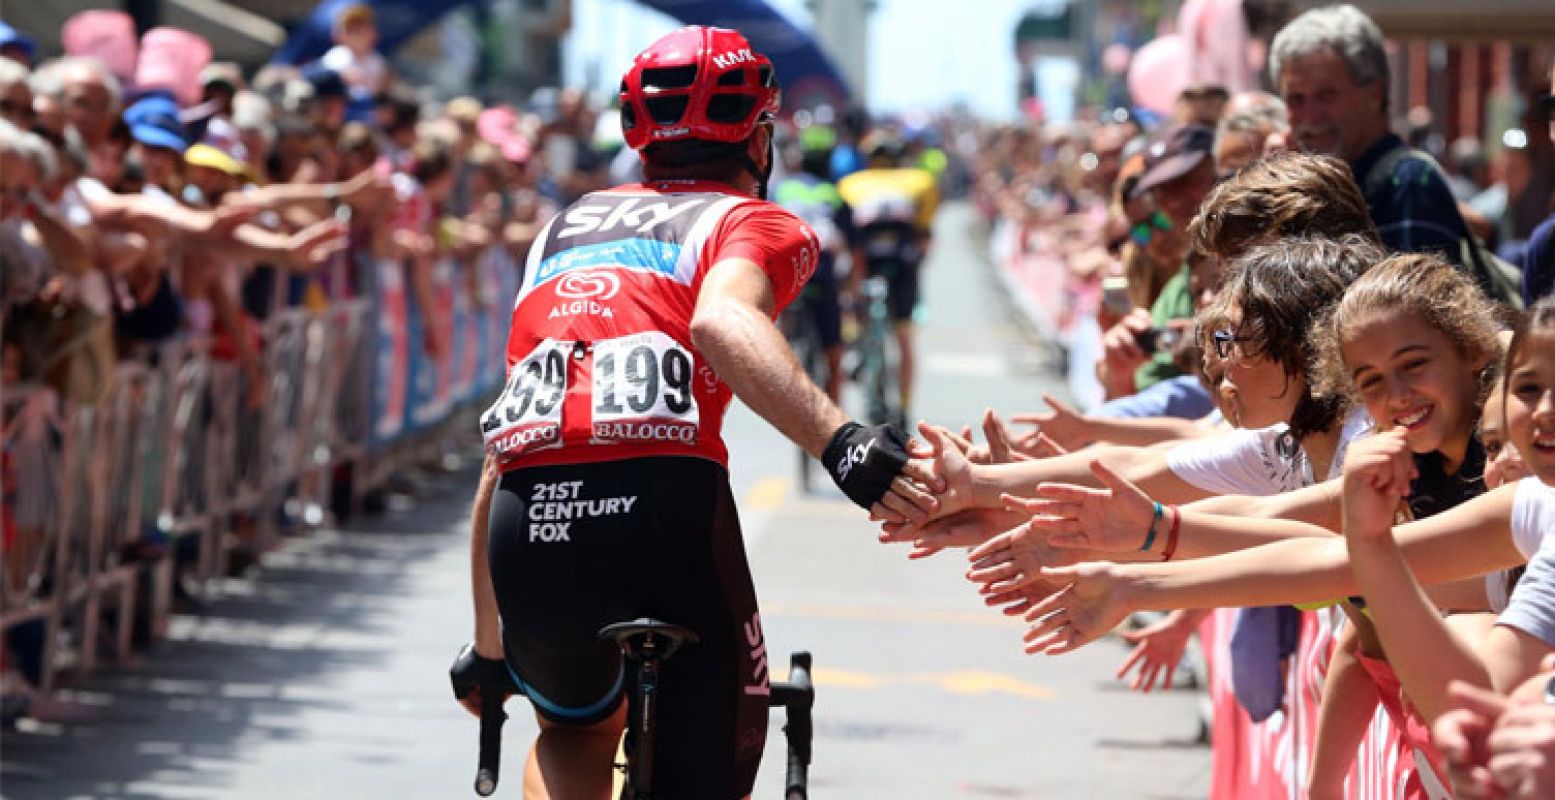 Moedig de renners van de Giro d'Italia 2016 aan!